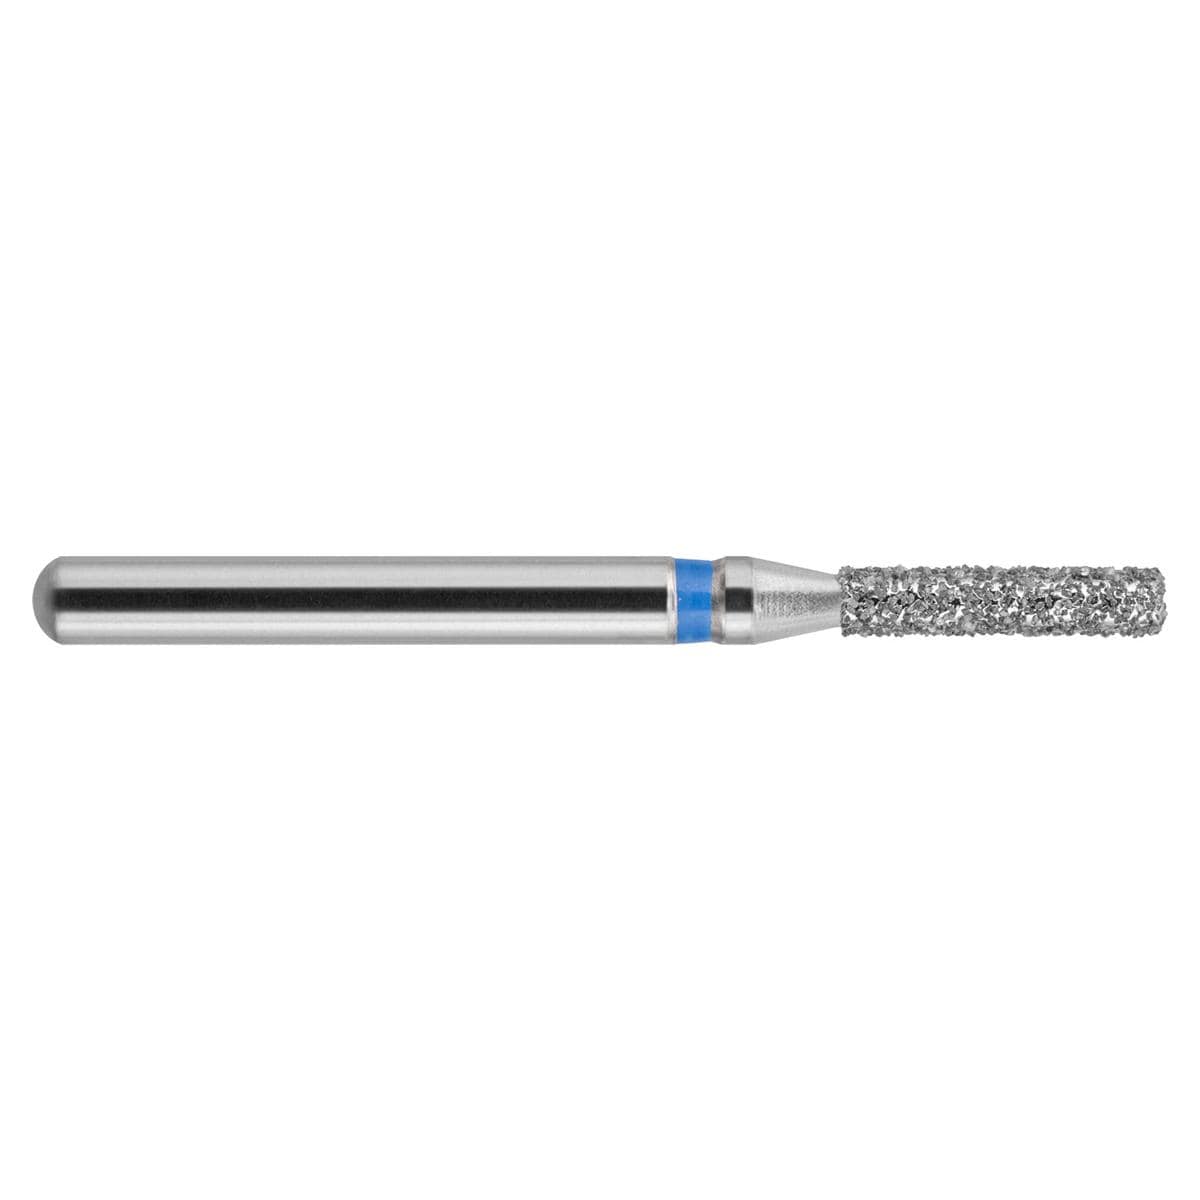 NeoDiamond FG, Form 110, Zylinder flach - ISO 014, mittel (blau), Packung 10 Stück